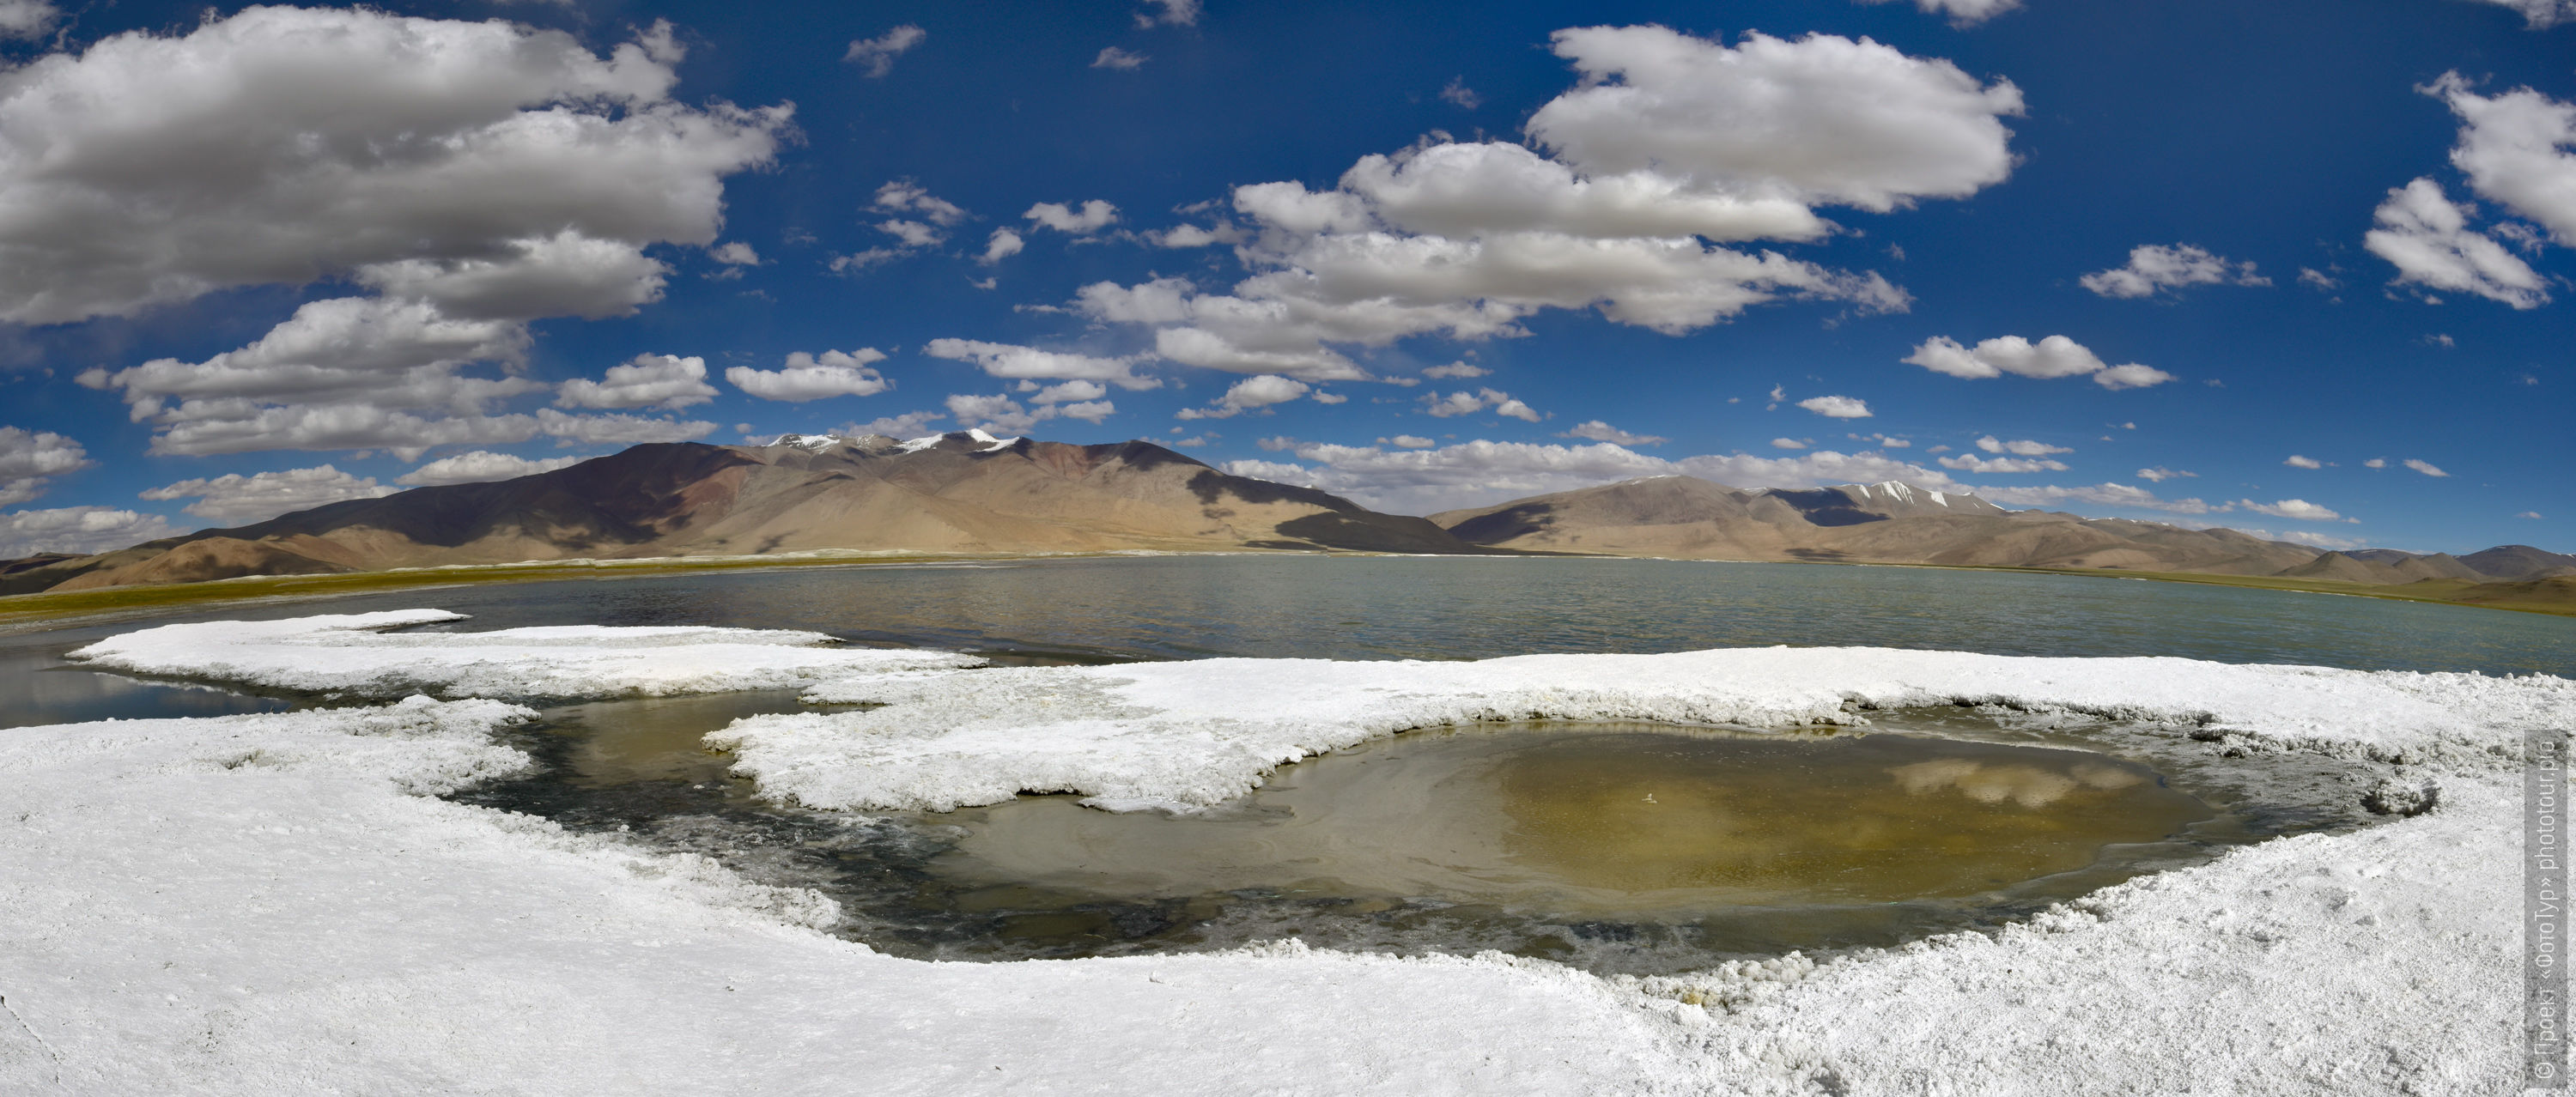 Salt shores of Lake Tso Kar, Ladakh womens tour, August 31 - September 14, 2019.